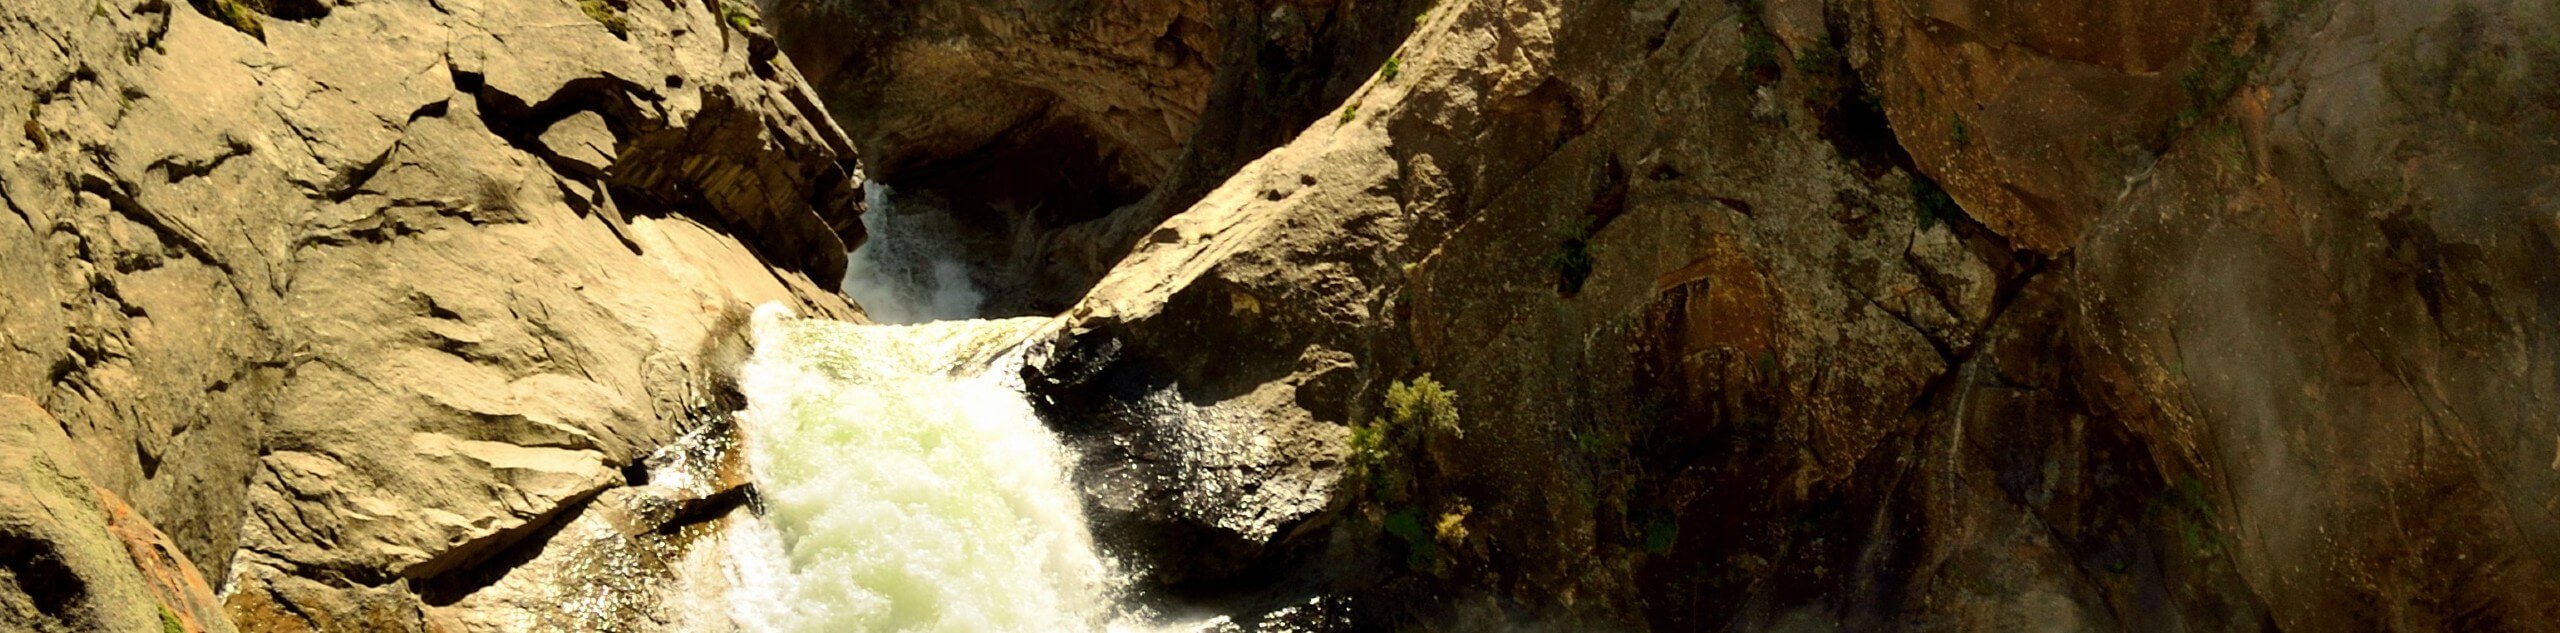 Roaring River Falls Trail